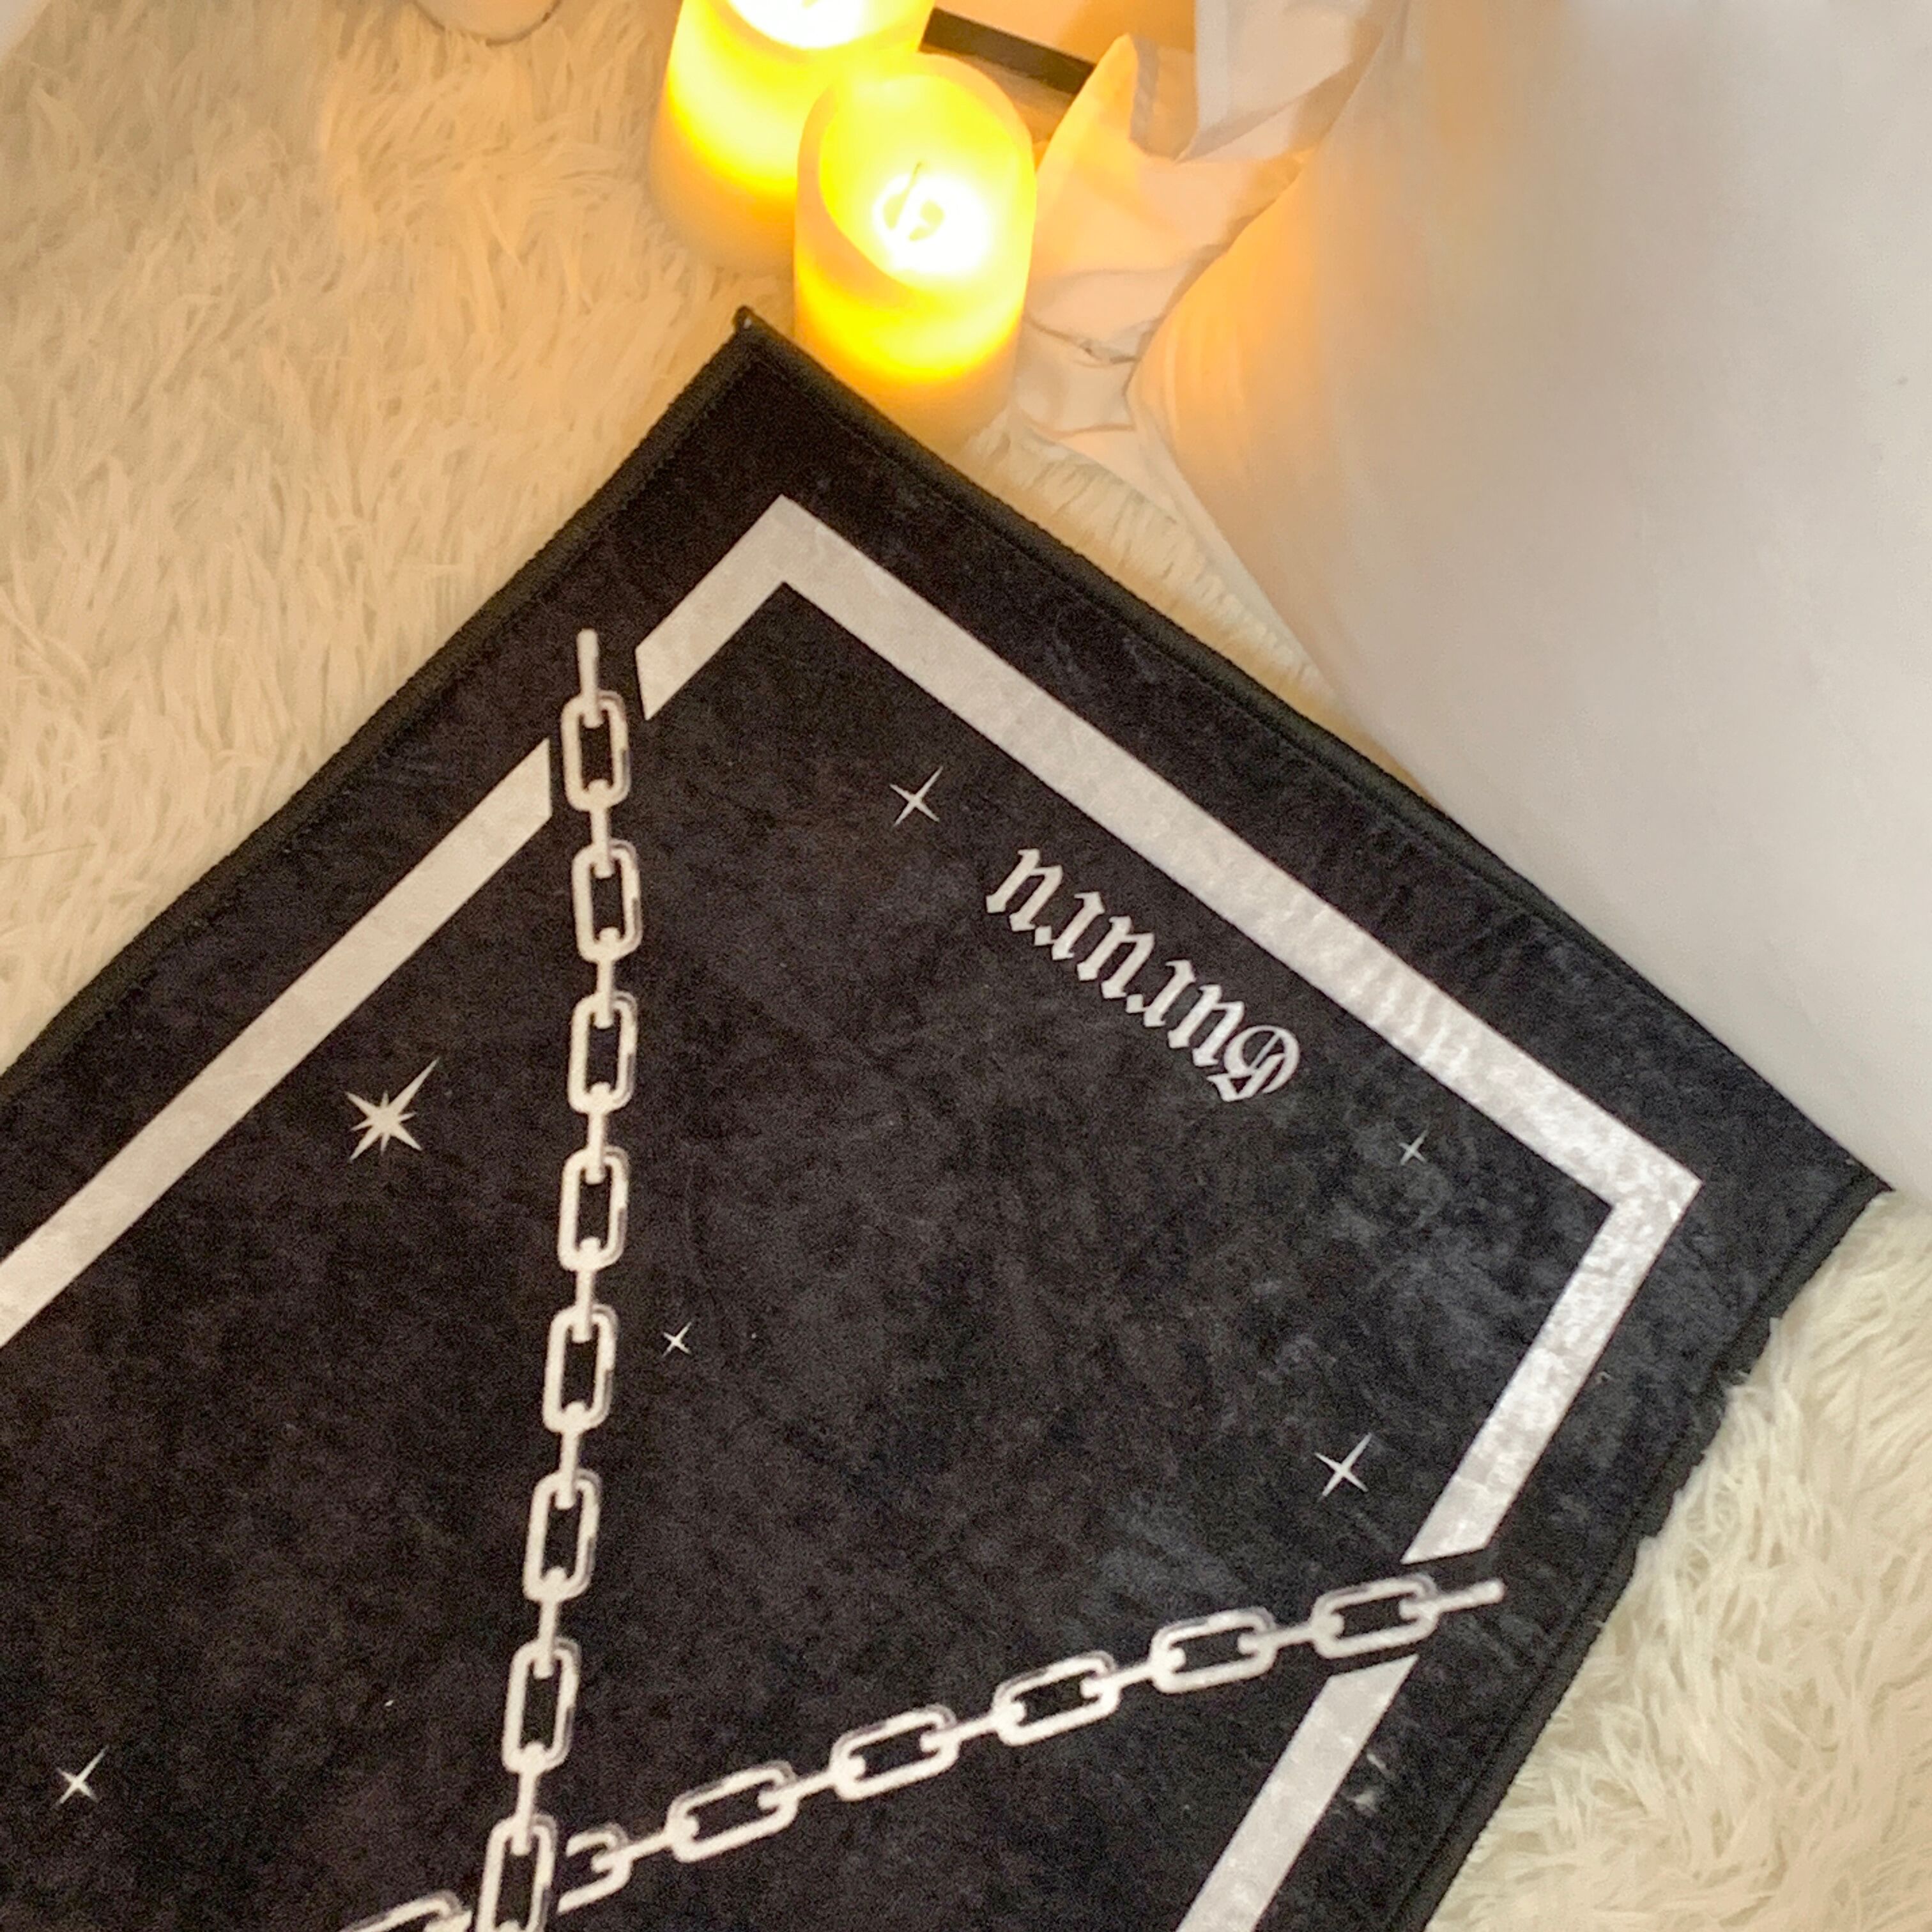 Tappeti in stile strega soggiorno decorazioni camera da letto di Halloween moquette tappeto scuro tappetino porte della bara gotica